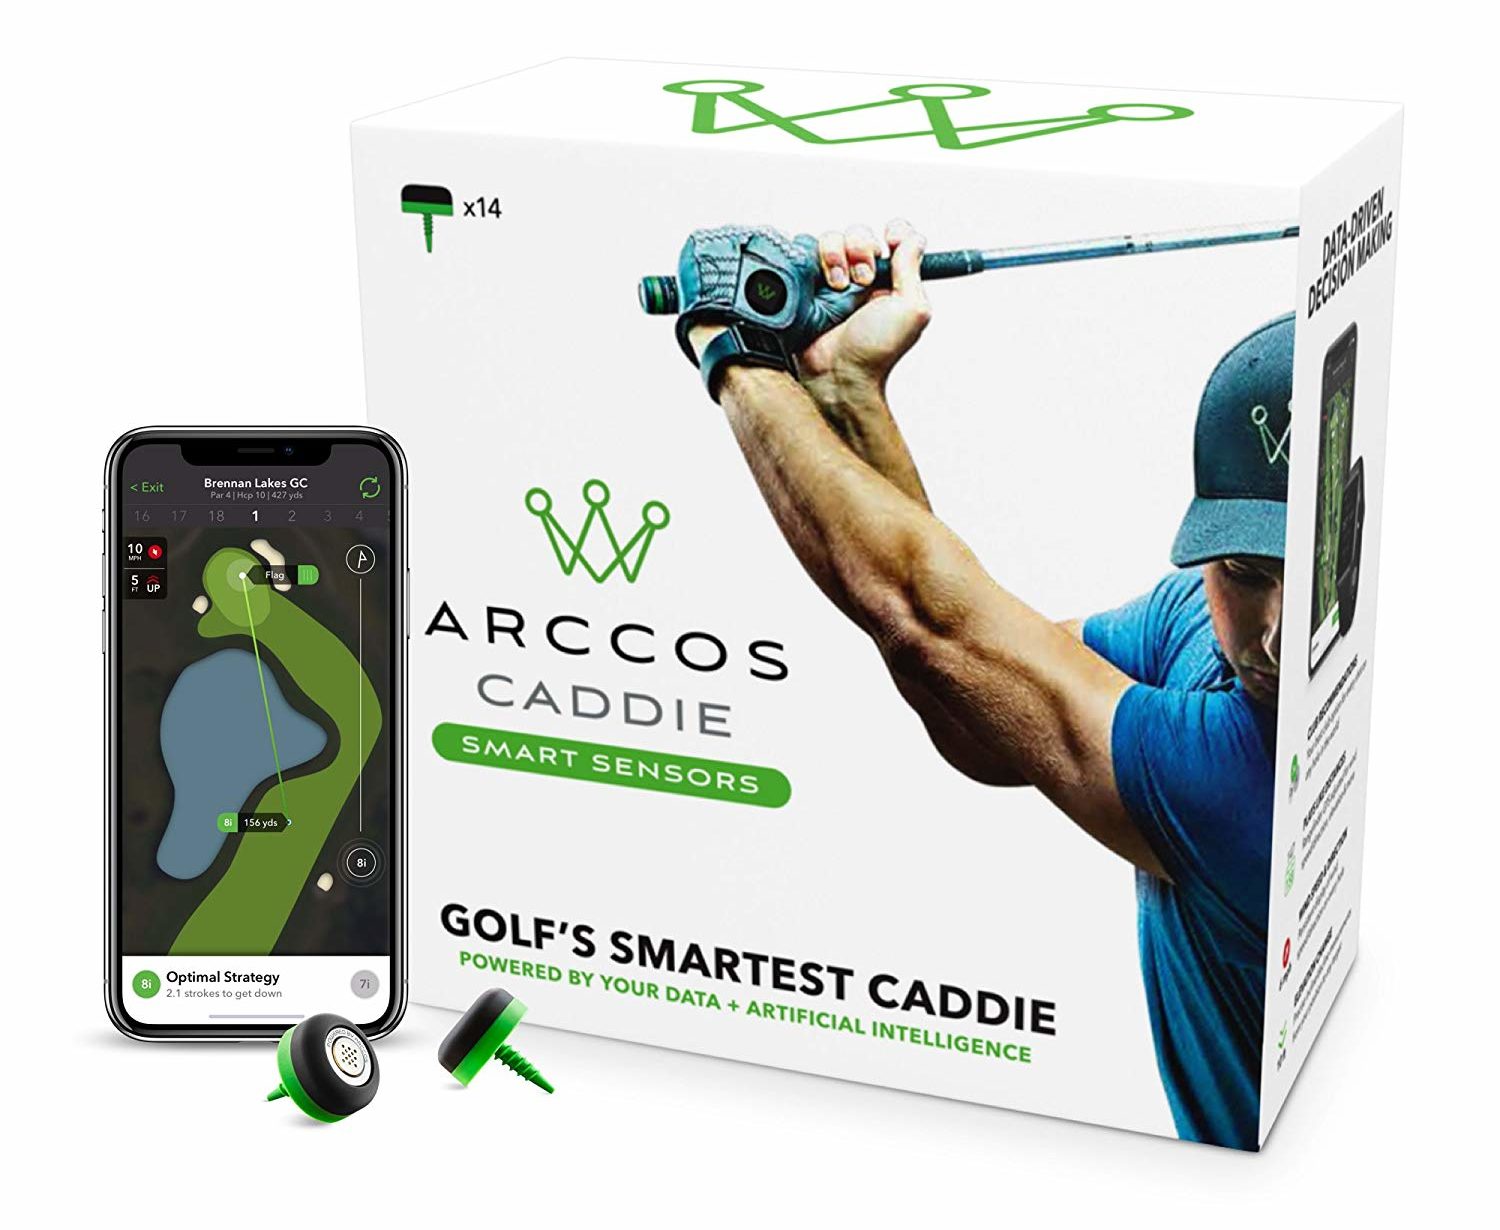 Top Cool Tech Gifts 2018: Arccos Caddie Smart Golf Sensors